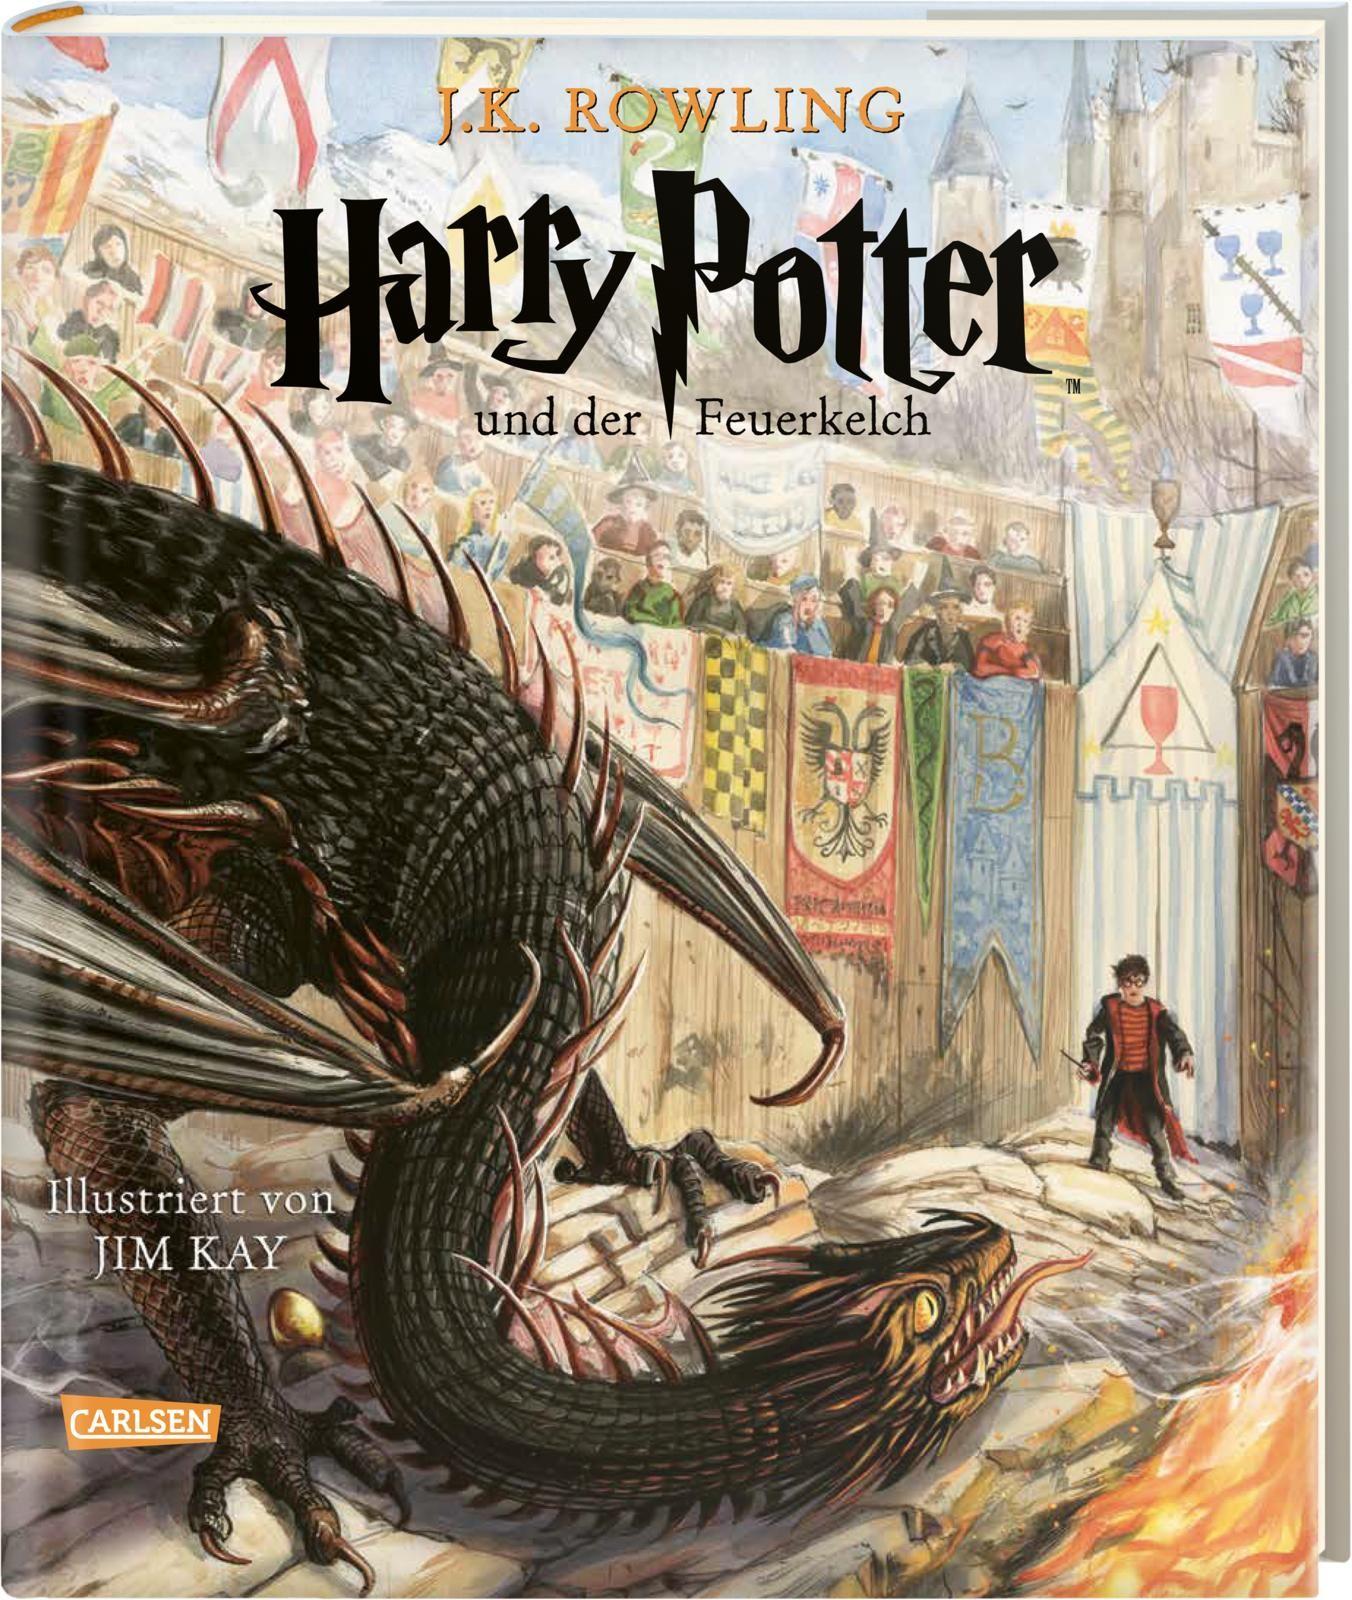 Harry Potter und der Feuerkelch (farbig illustrierte Schmuckausgabe) (Harry Potter 4) Illustrierte Ausgabe